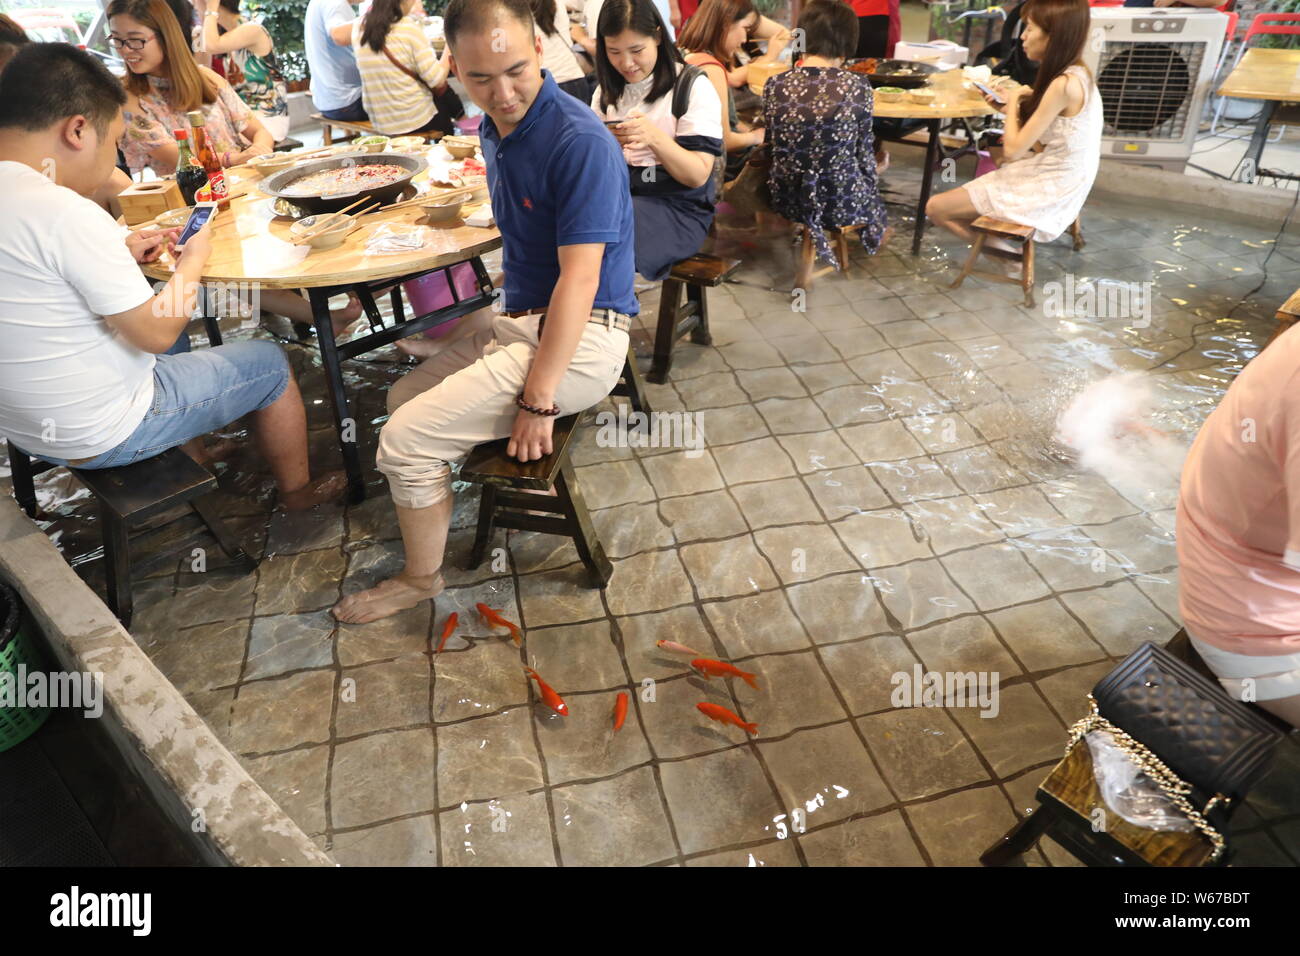 Kunden spielen mit Wasser ihre Füße zu kühlen, wie Sie würziger Eintopf in einem Restaurant in Chongqing, China, 11. Juli 2018 Essen. Zu gewinnen Menschen zu sp Essen Stockfoto